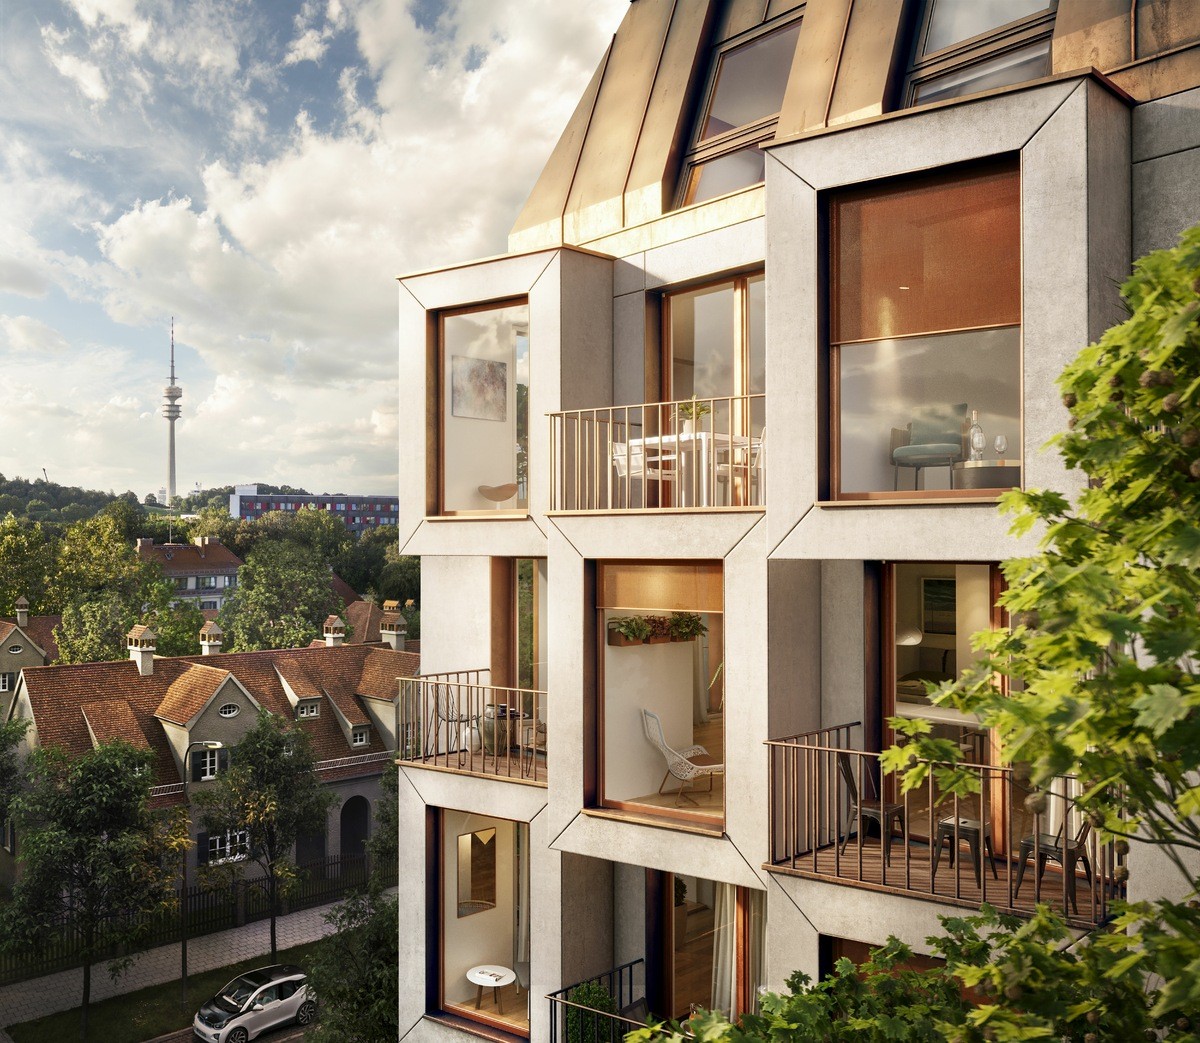 Prédio residencial terá interiores modulares para que moradores possam adaptar o layout (Foto: UNStudio)